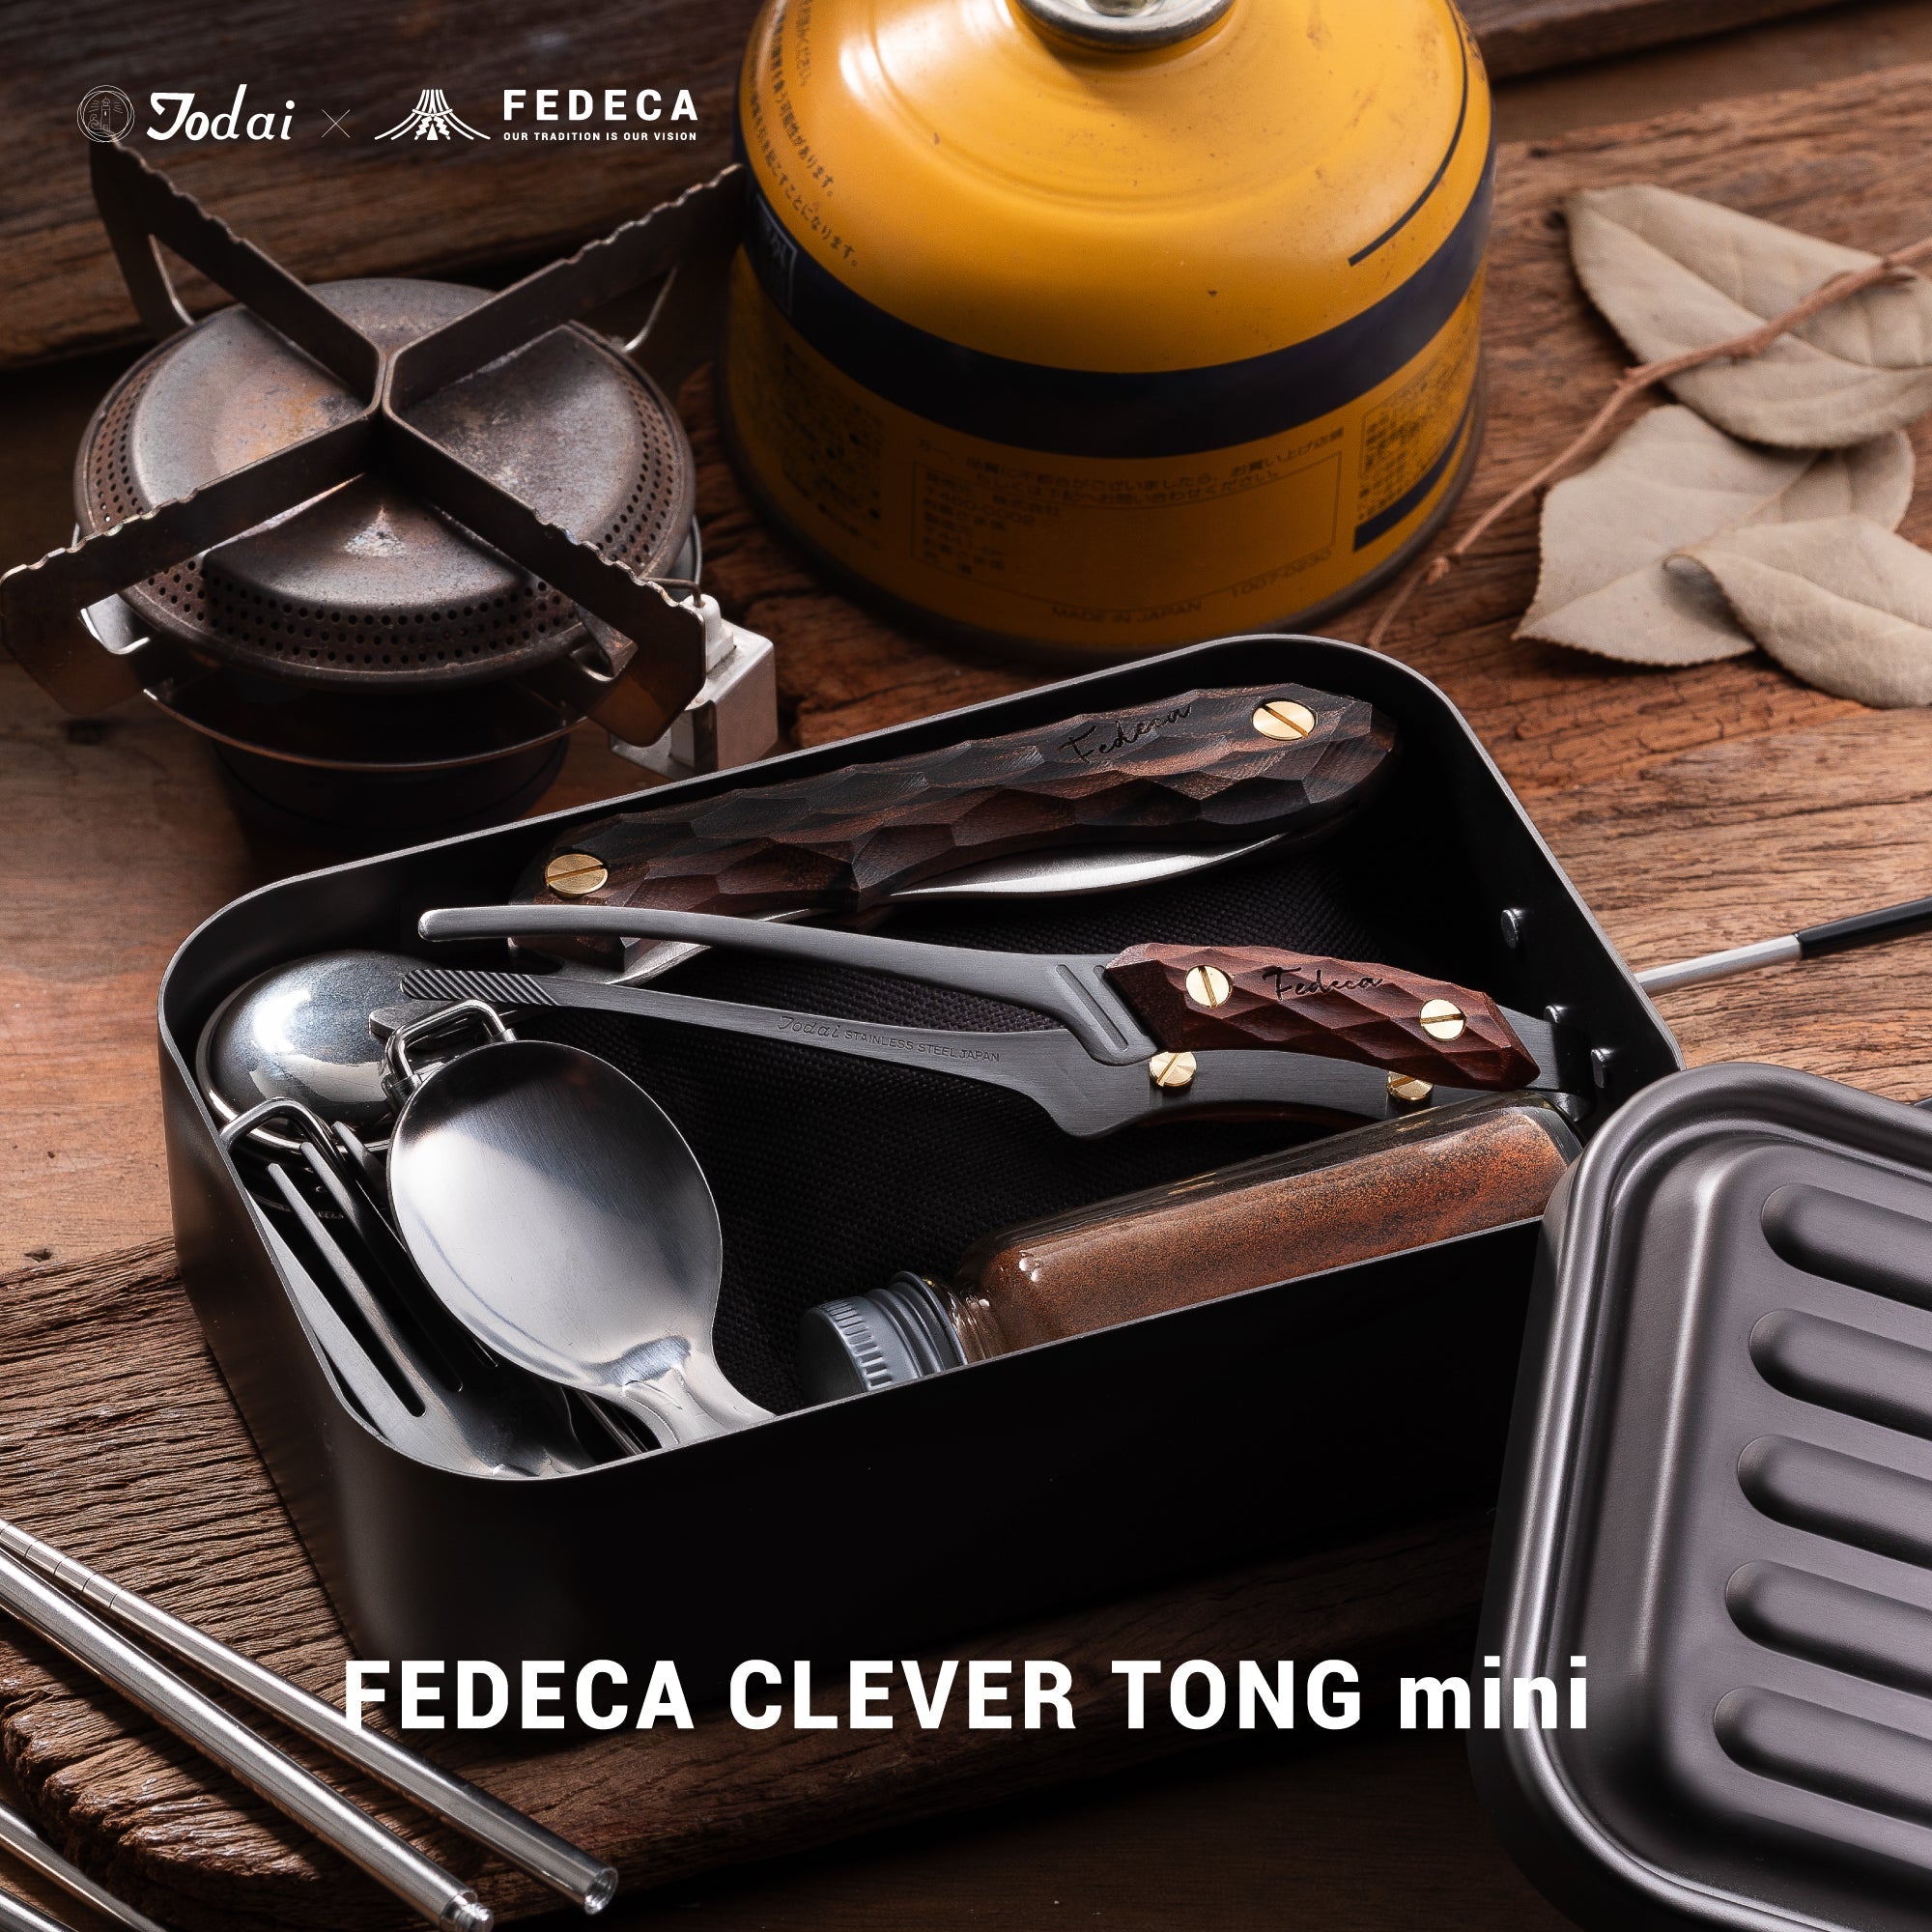 【NEW】FEDECA CLEVER TONG mini マルチカラー 4,620円